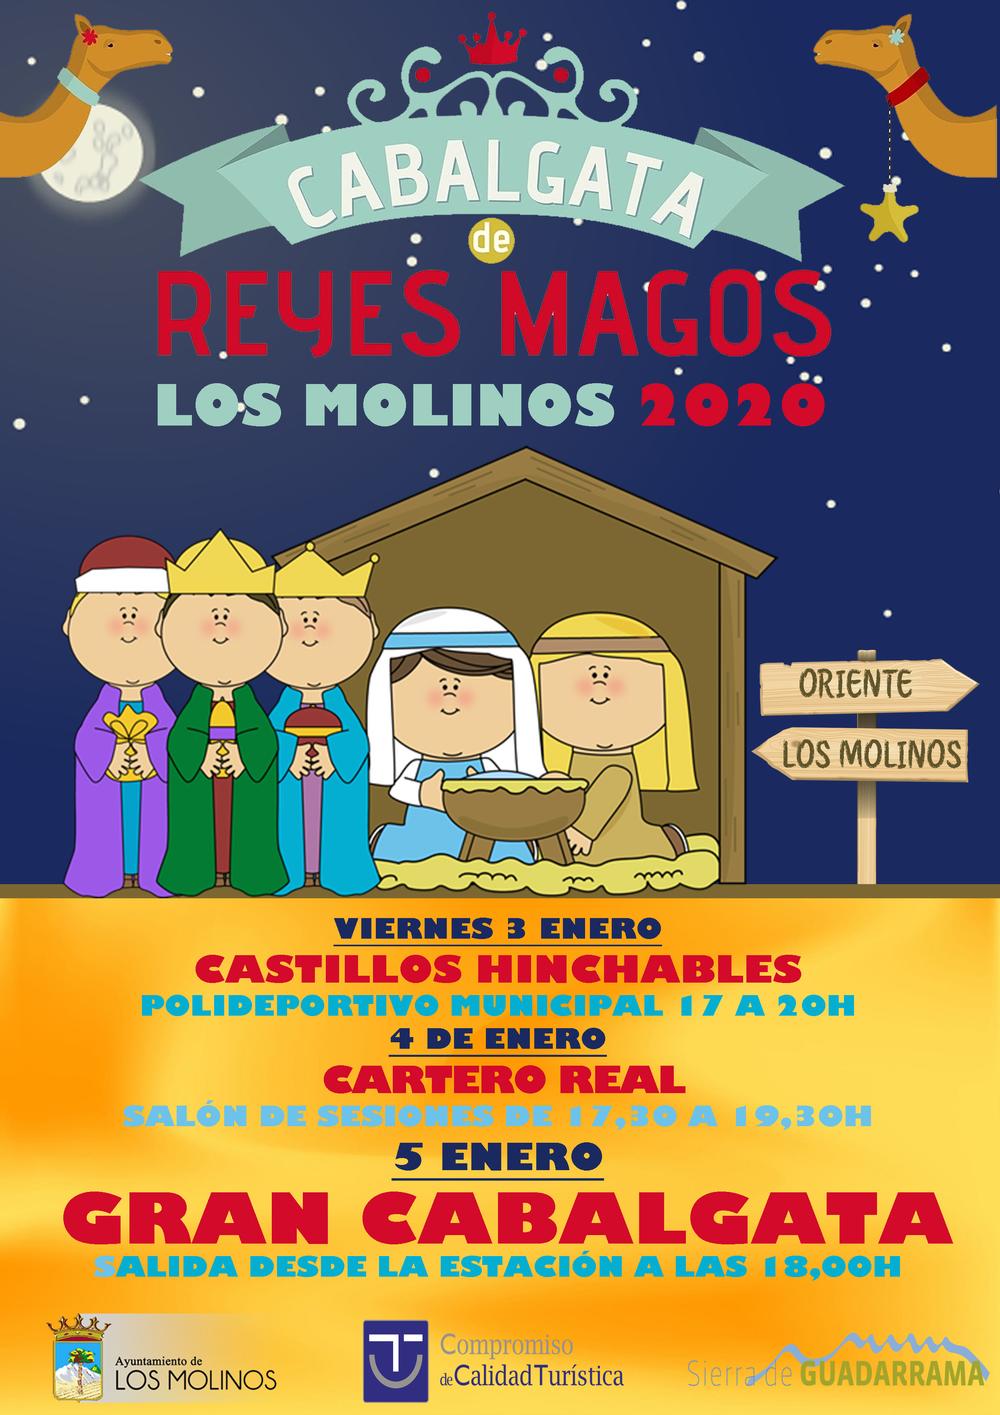 Boicot a la Cabalgata de Reyes Magos y de paso deslucir la cultura española Cabalgata2019-20